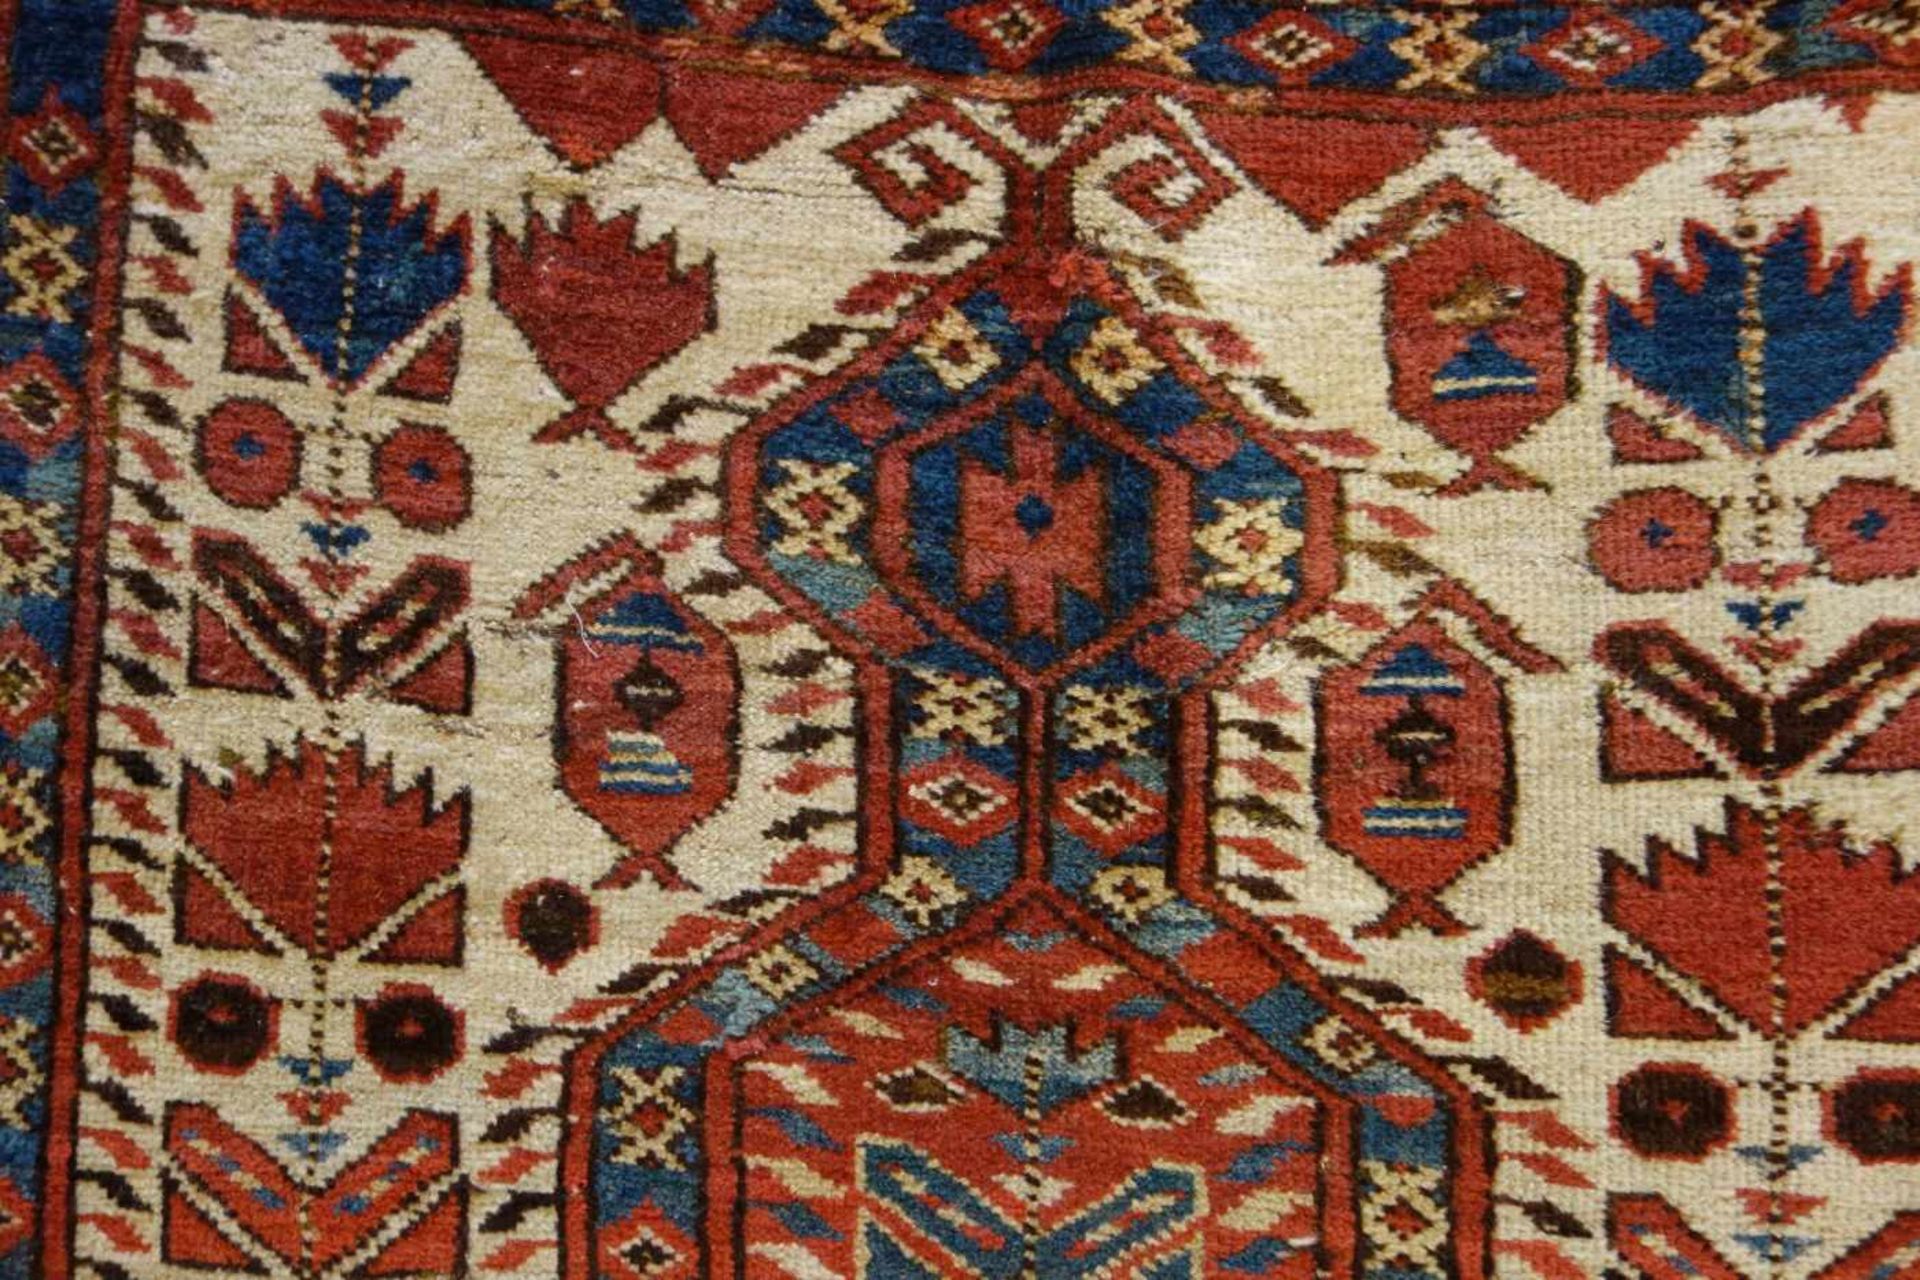 SCHMALER BESCHIR GEBETSTEPPICH / prayer rug, wohl 2. H. 19. Jh., Turkmenistan / Ersari-Beschir ( - Bild 3 aus 24